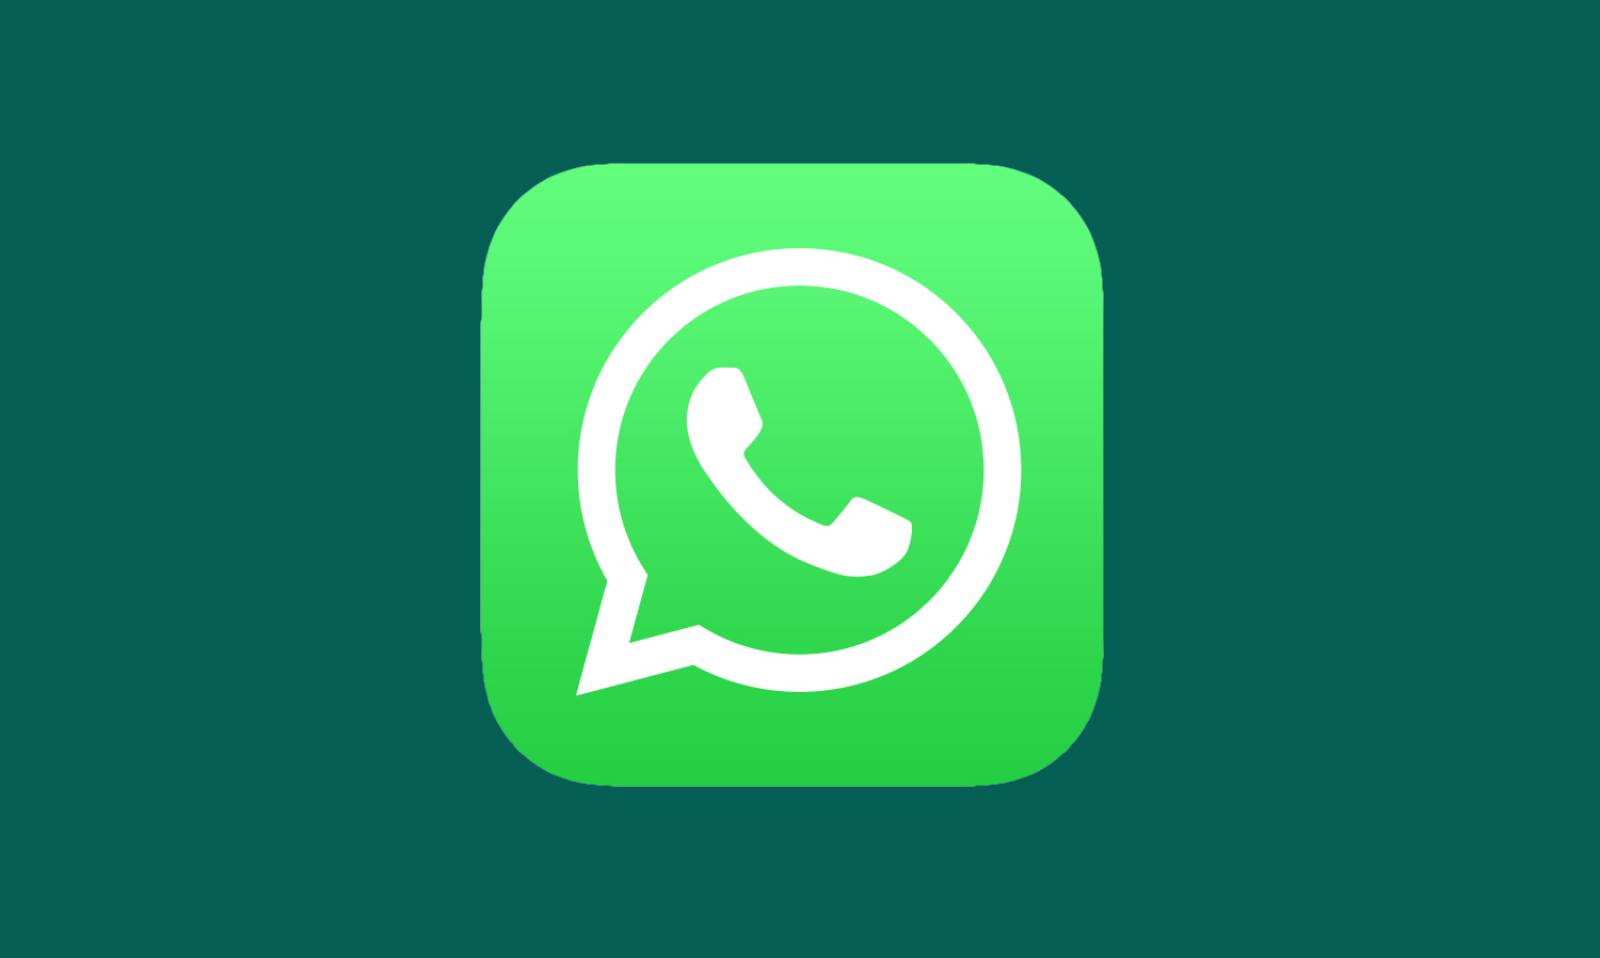 WhatsApp-certifiering